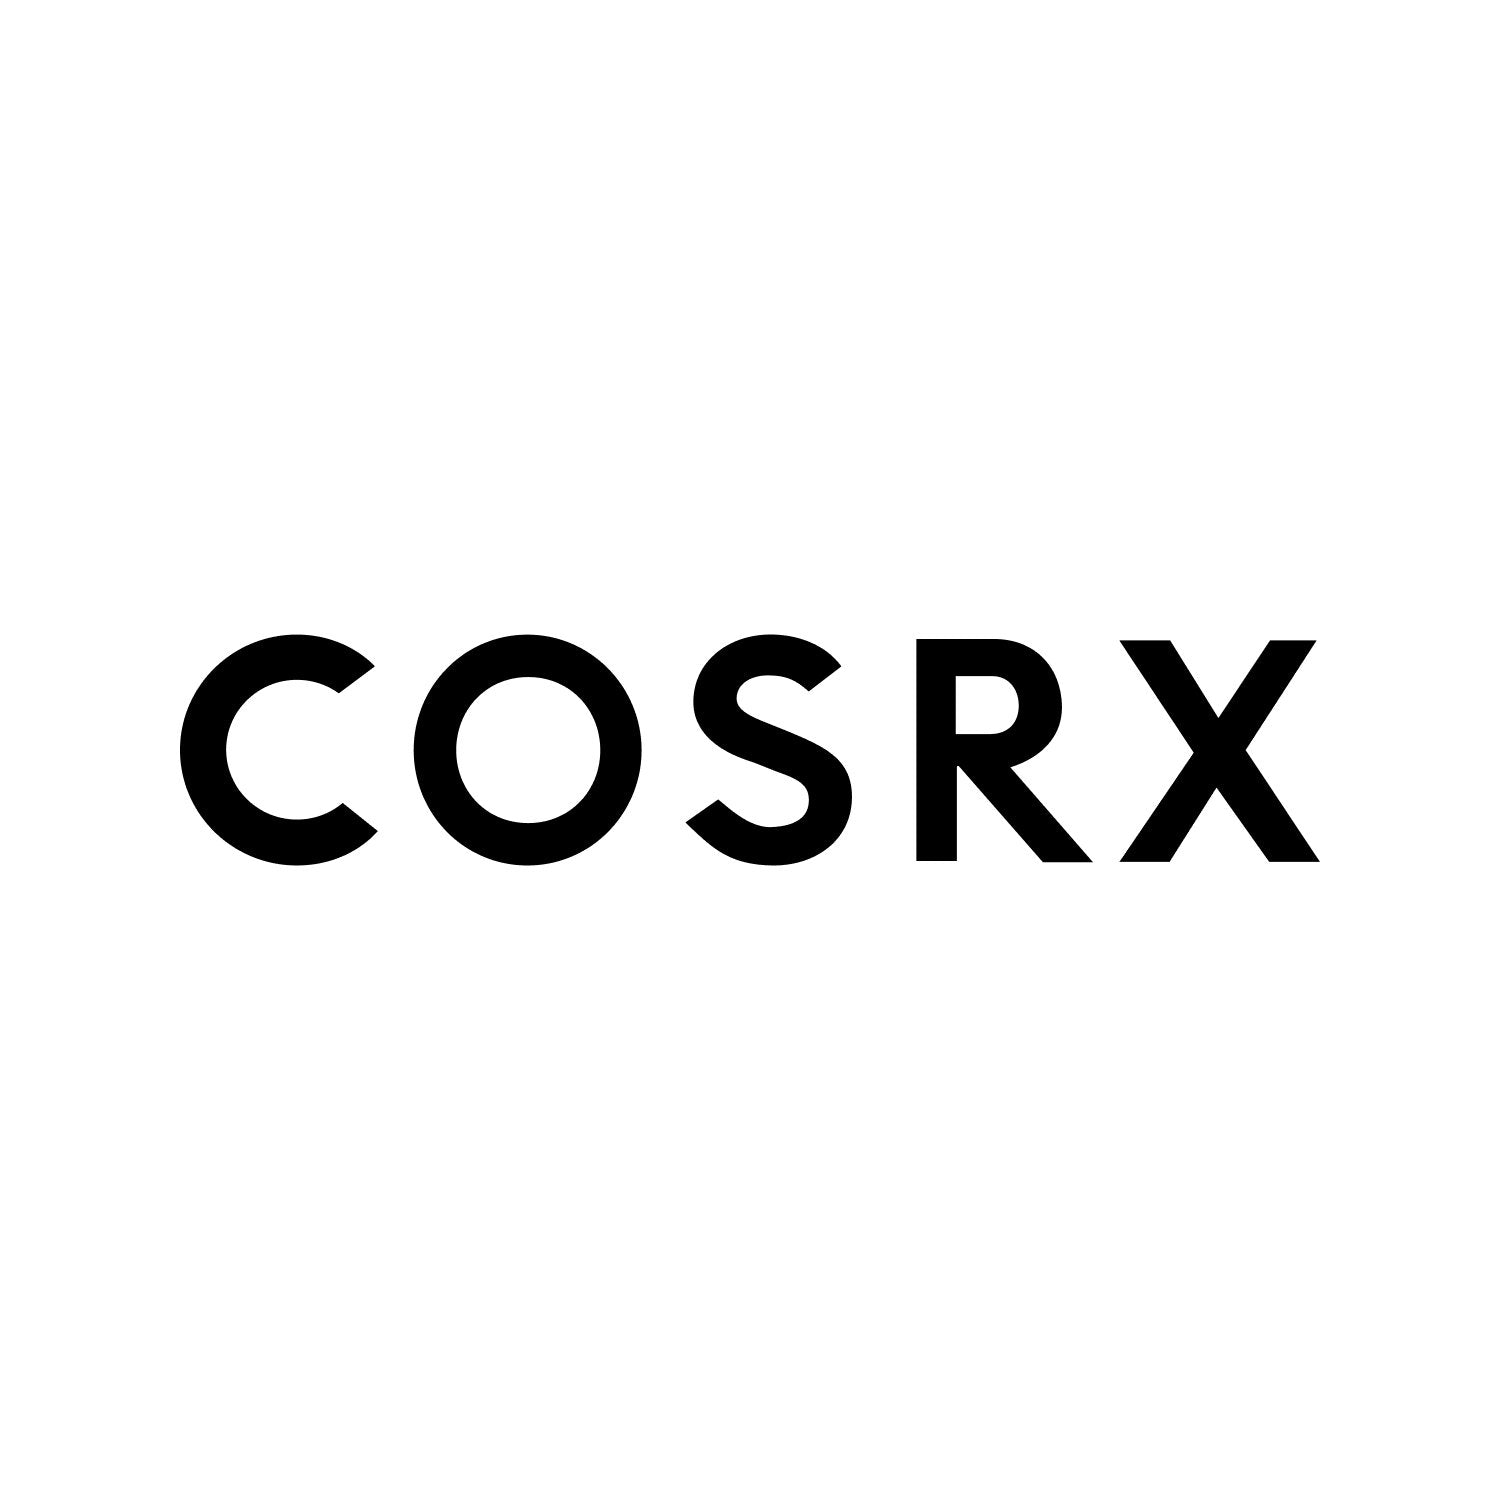 Cosrx-skincare-korean-riyadh